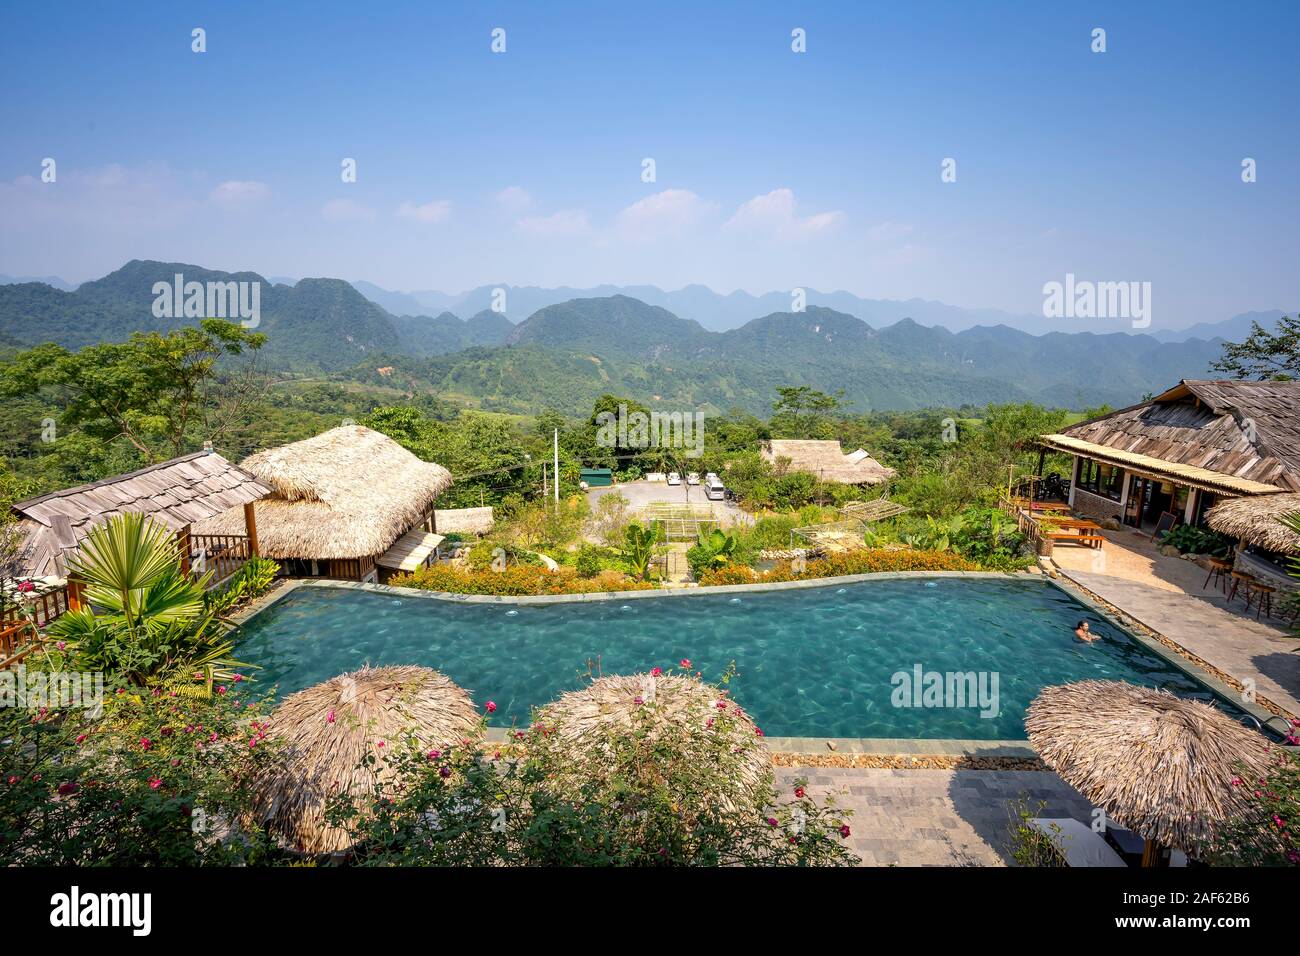 La commune de Pu Luong, province de Thanh Hoa, Vietnam - 1 octobre 2019 : image panoramique de Pu Luong Ecological Park Resort avec de belles montagnes dans Thanh Banque D'Images